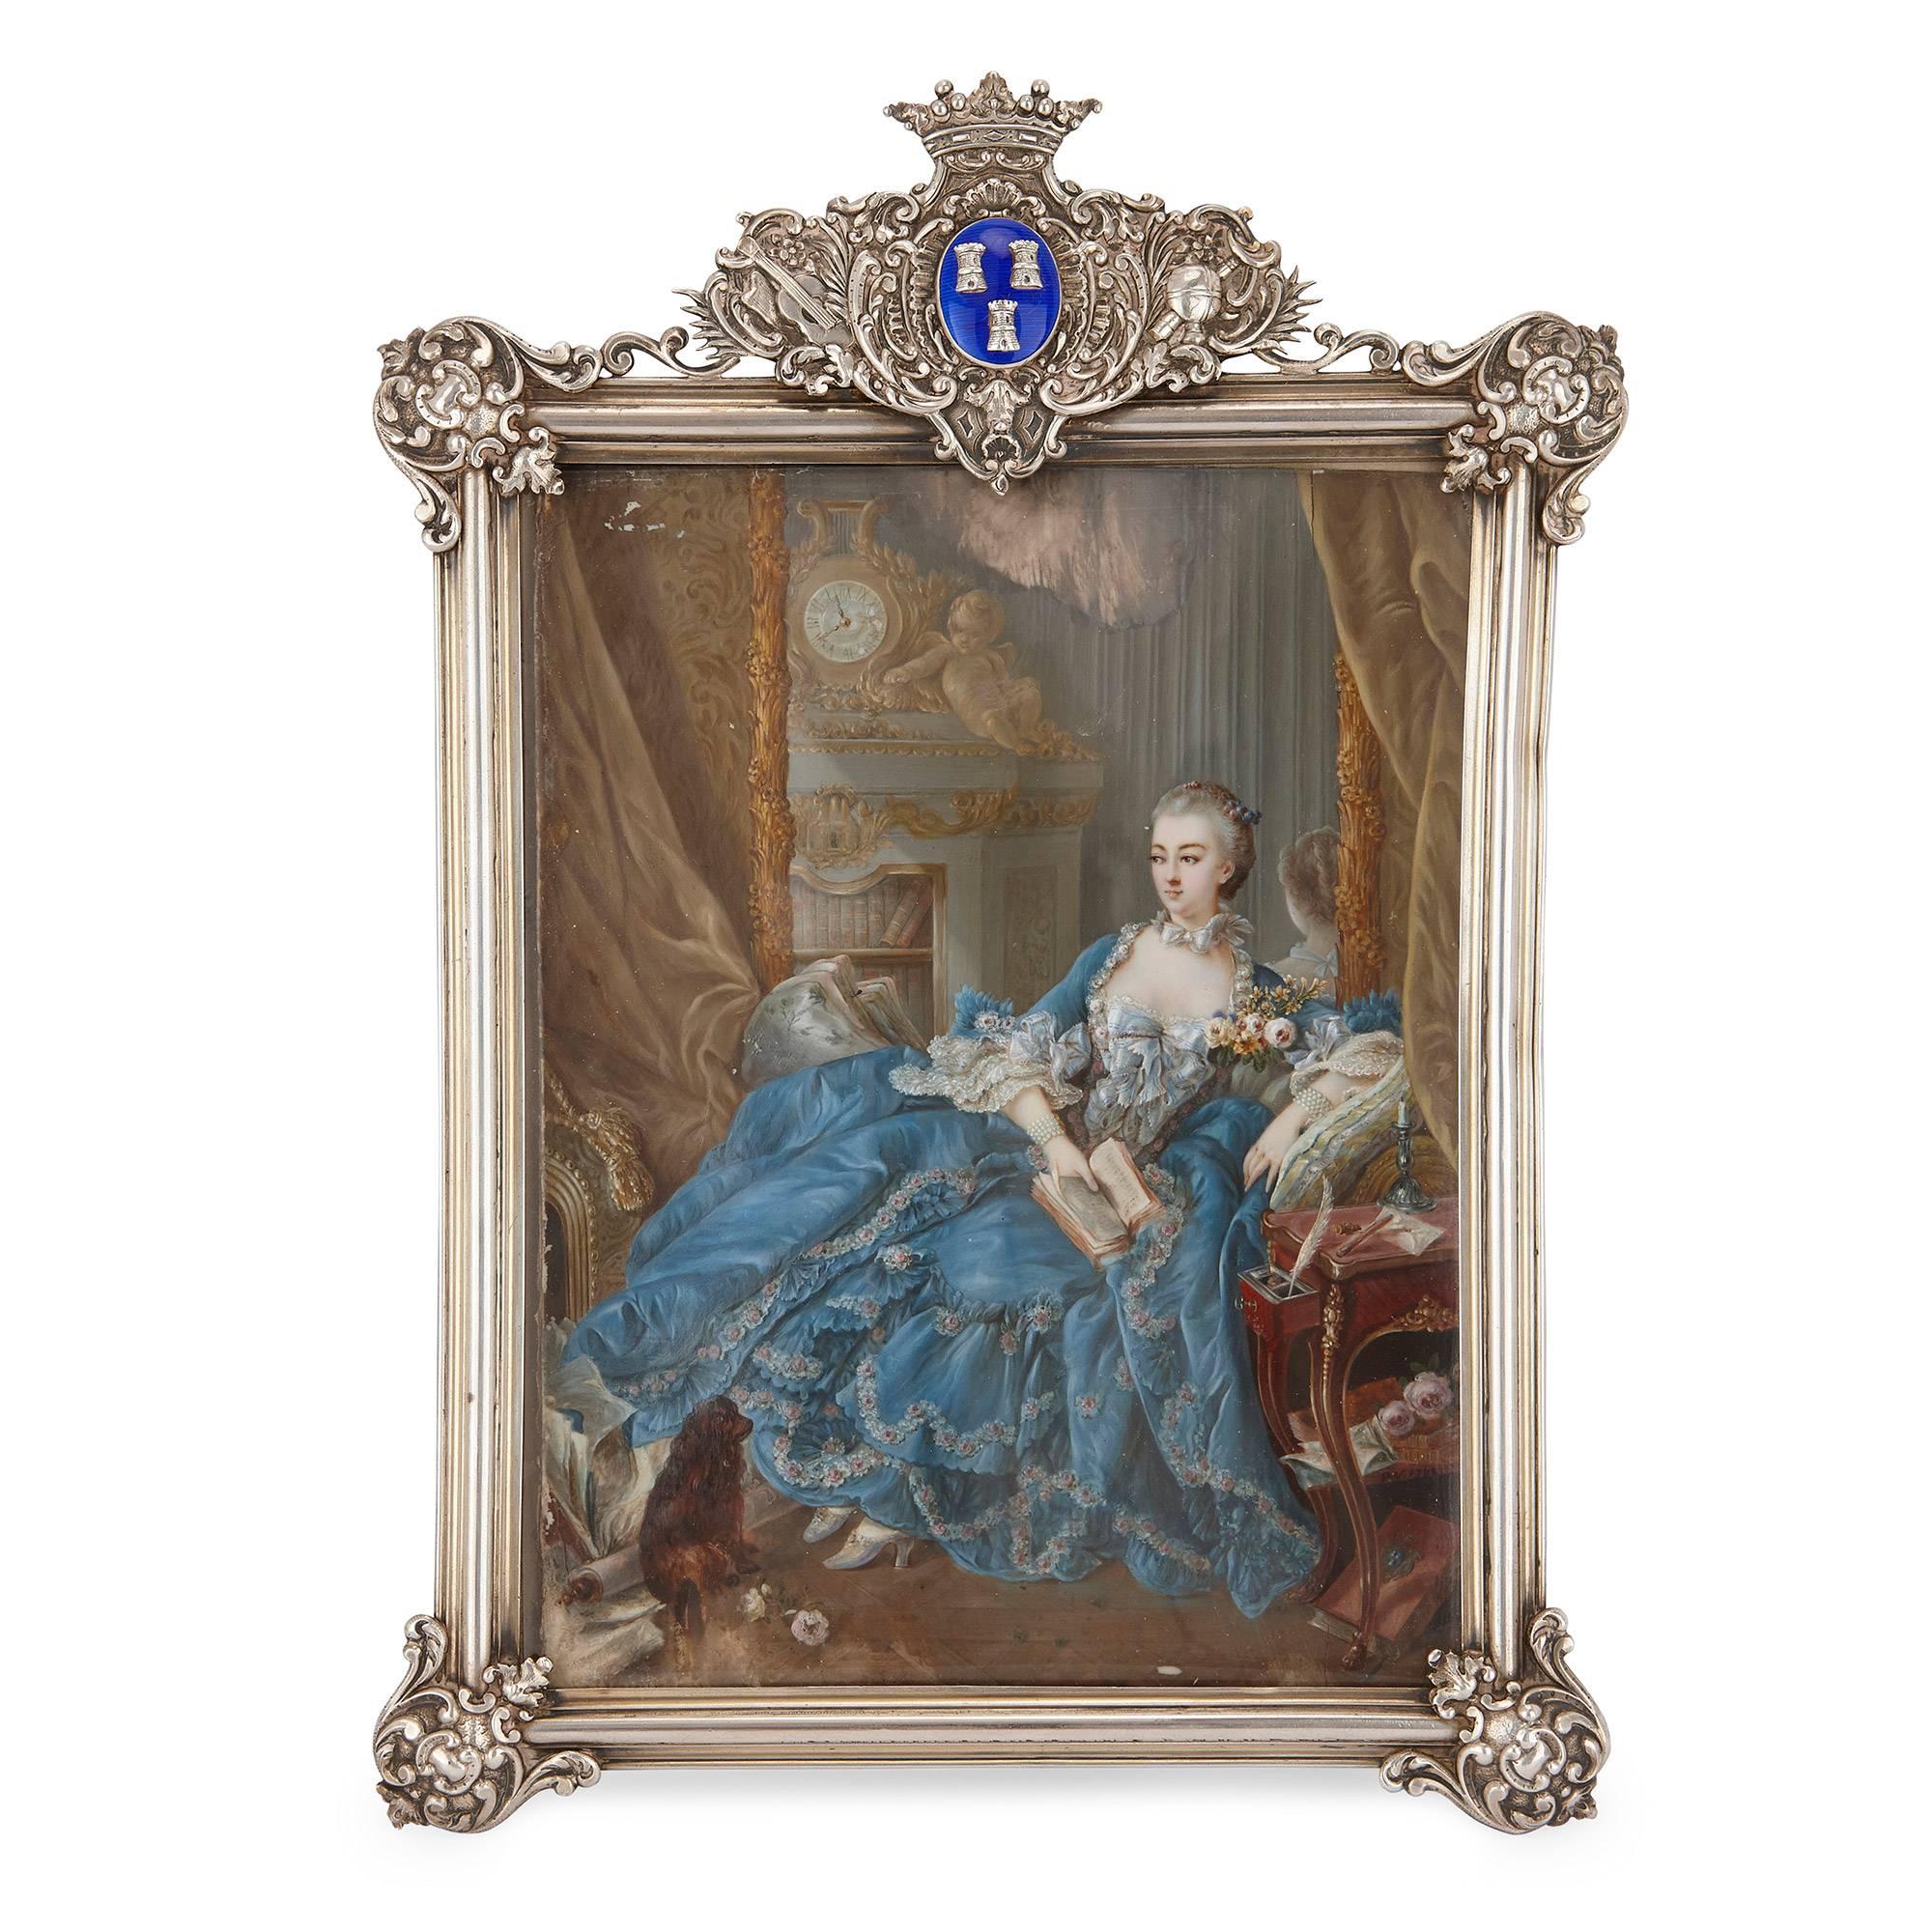 Portrait miniature after Boucher's portrait of Madame de Pompadour 